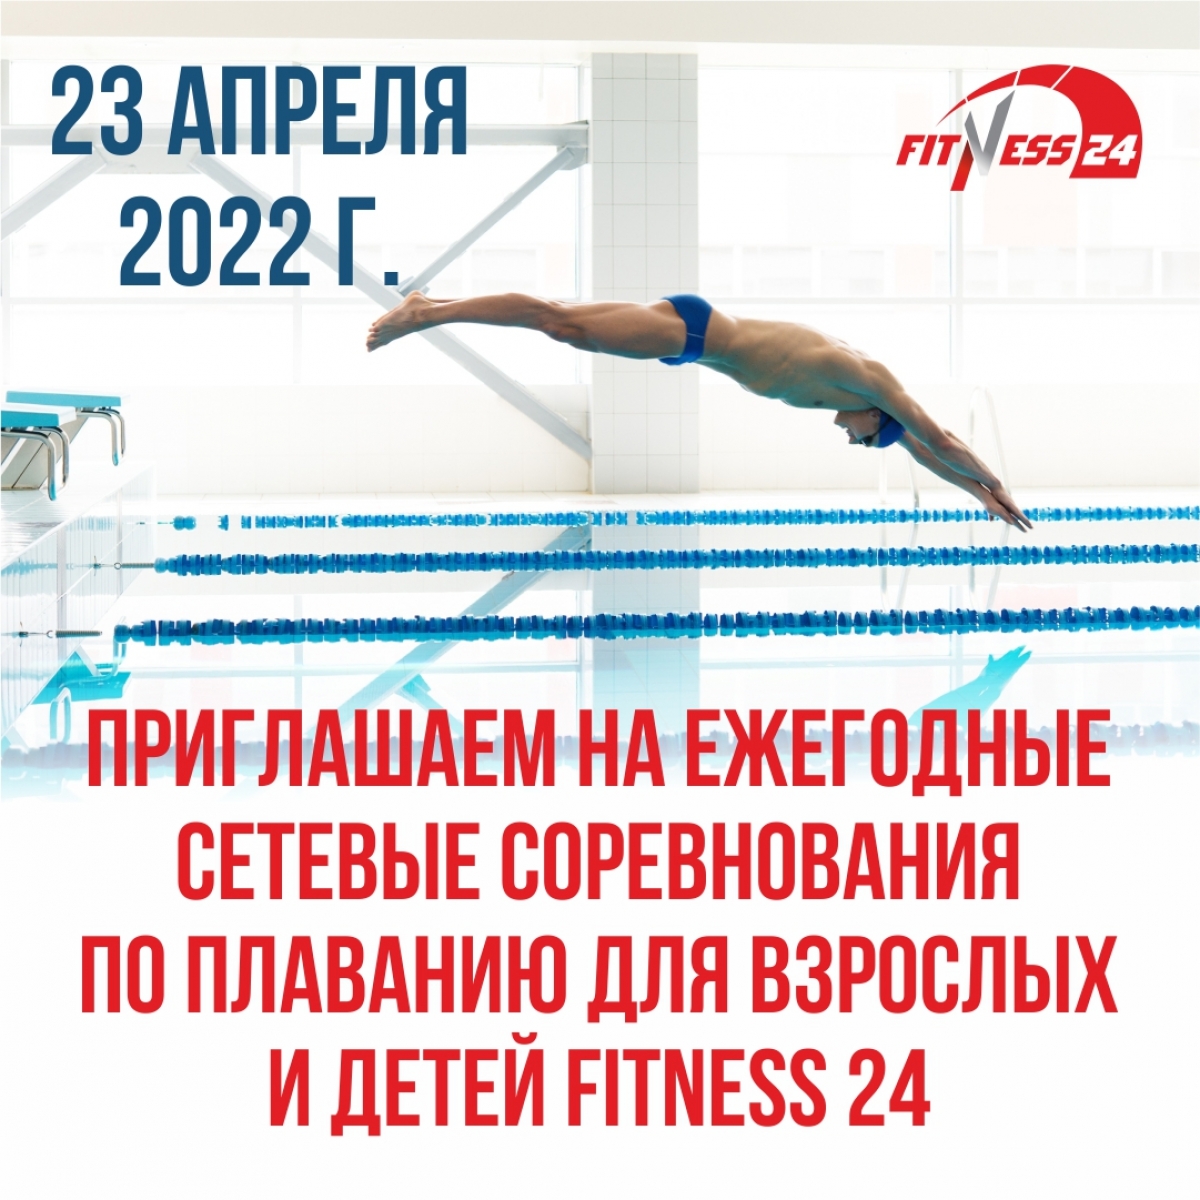 Ежегодные сетевые соревнования по плаванию Fitness24'22